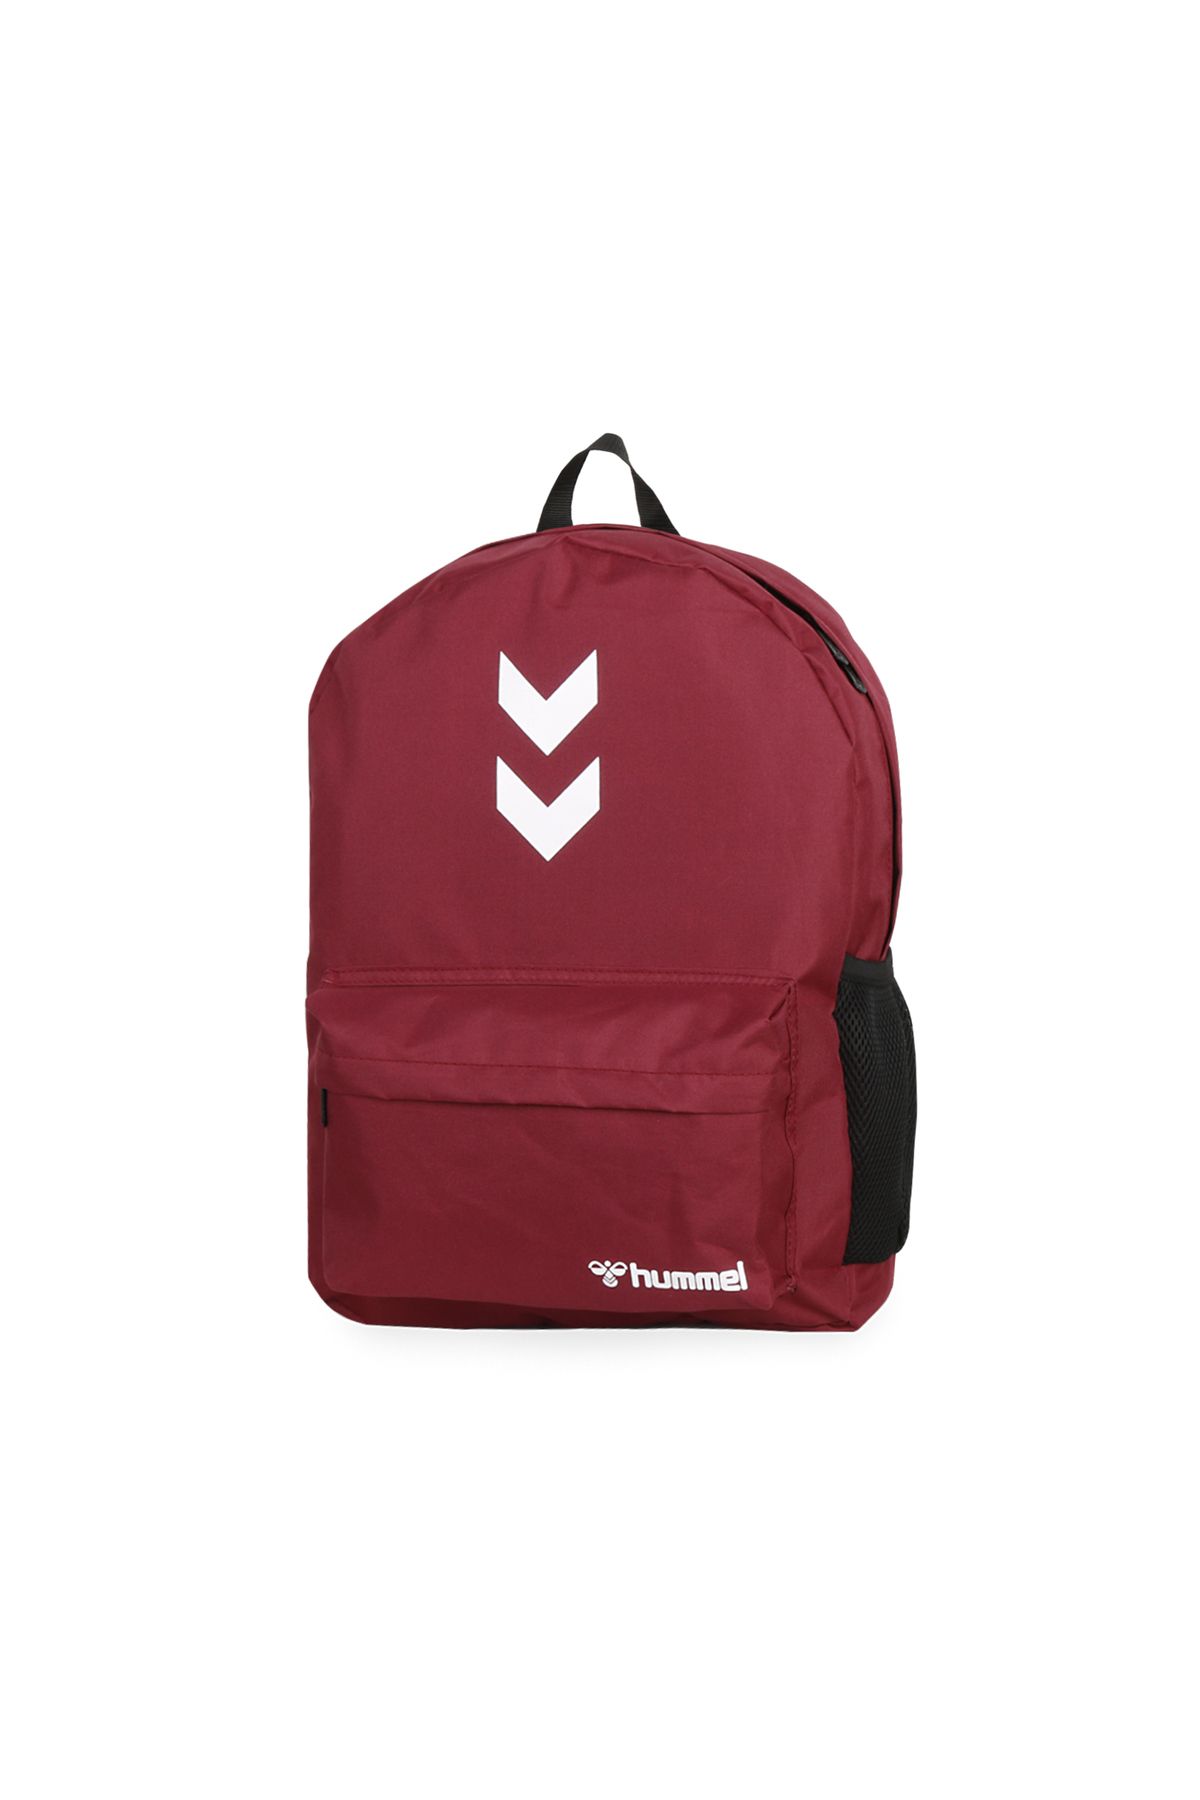 hummel Backpack Günlük Kullanıma Uygun Sırt ve Okul Çantası İlkokul Ortaokul Lise Çantası